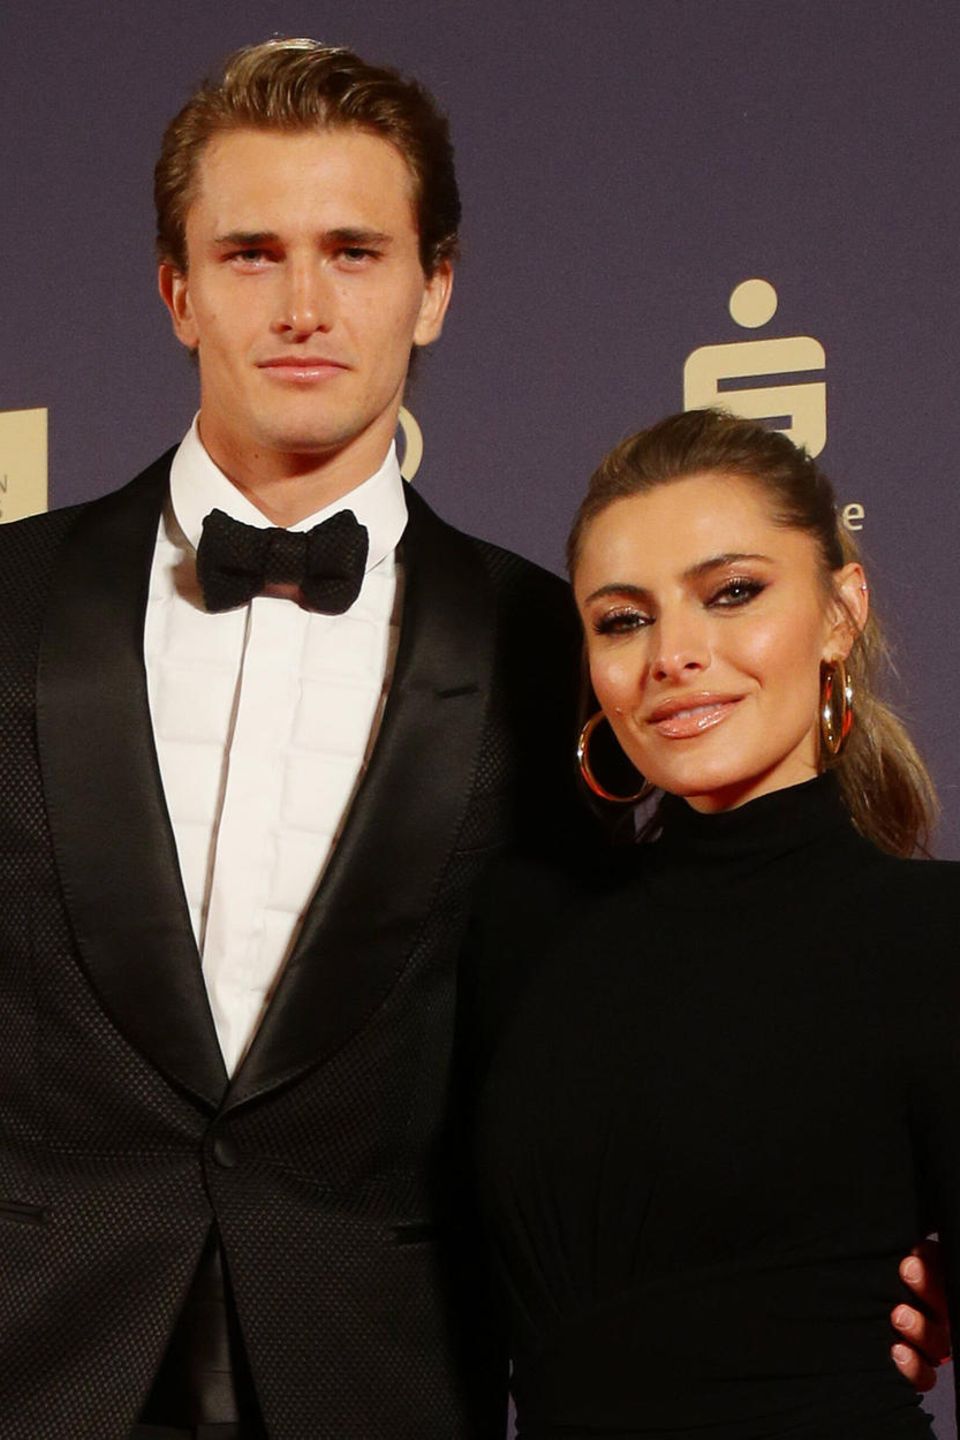 Sophia Thomalla und Alexander Zverev auf dem Roten Teppich bei der Gala zum "Sportler des Jahres"